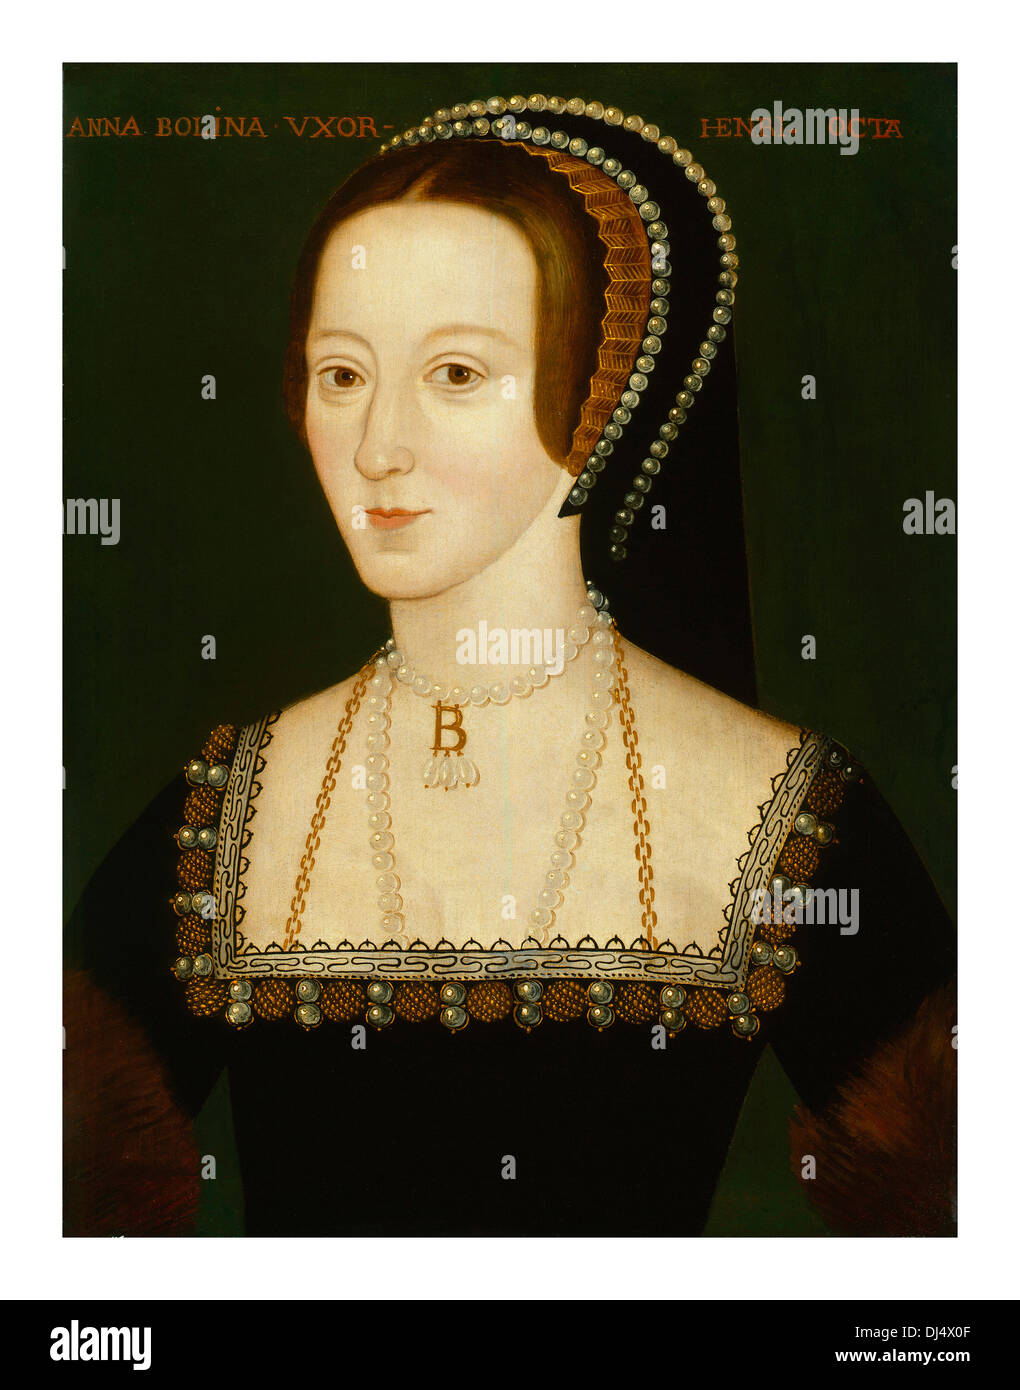 Portrait d'Anne Boleyn dans les huiles 16th siècle, maître artiste Elizabethan portrait, peut-être dérivé d'un original perdu de 1533–36 (alt 2F9G9P2) Banque D'Images